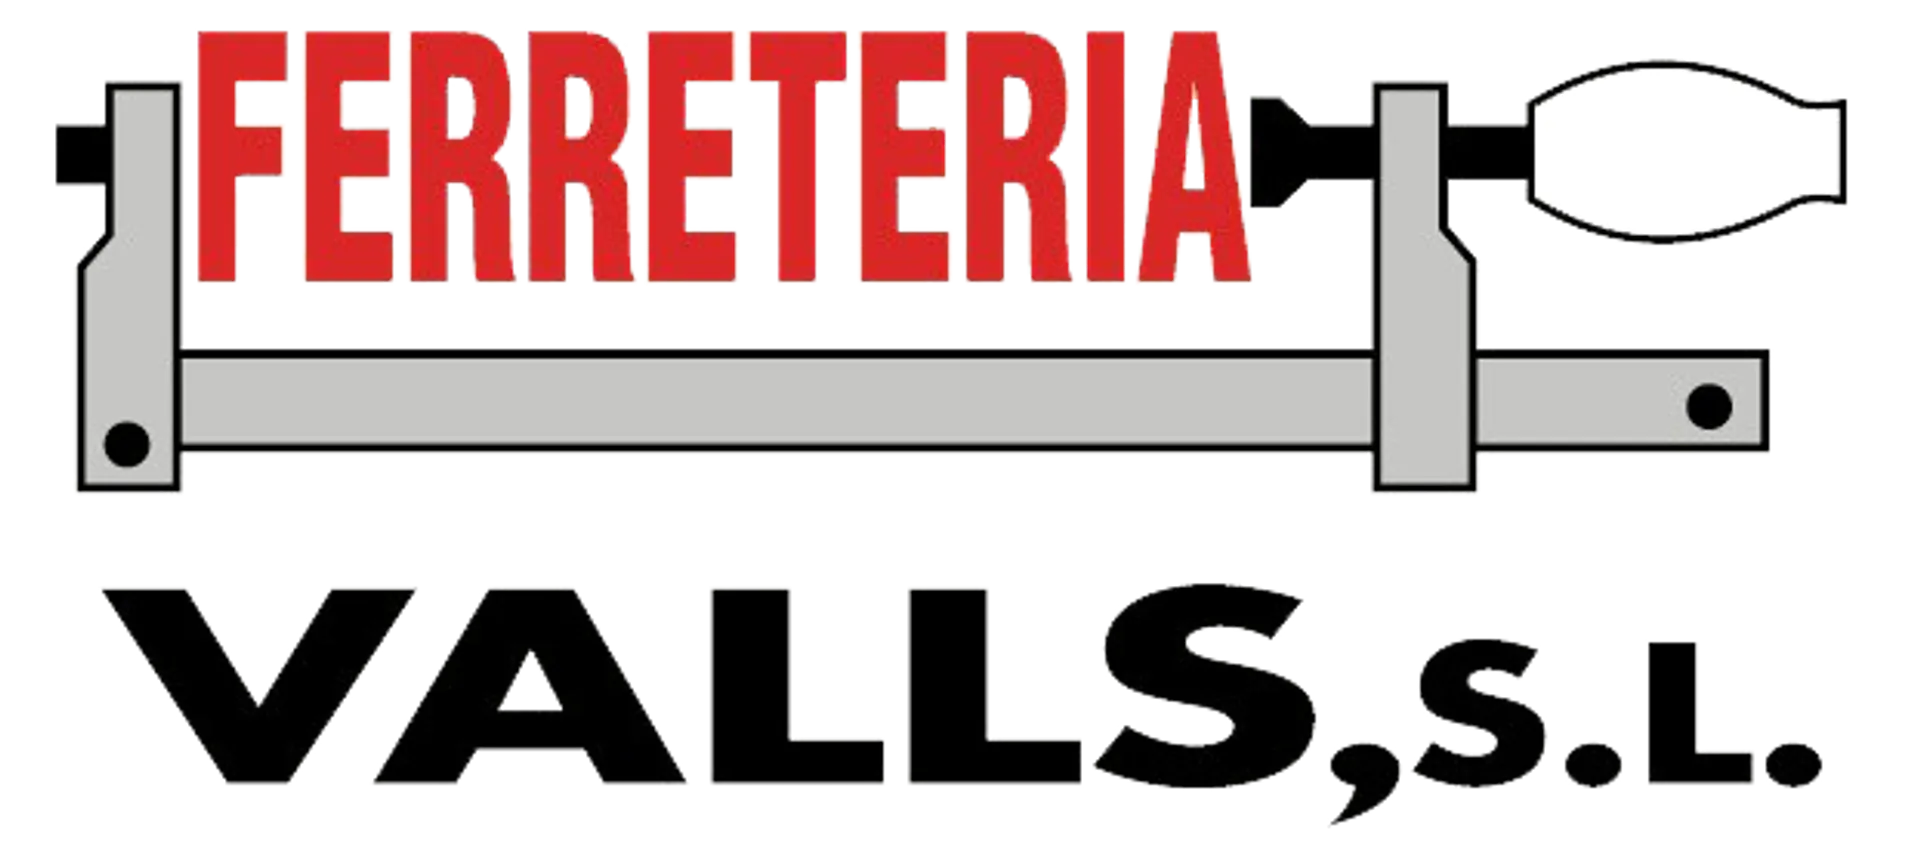 FERRETERÍA VALLS logo de catálogo